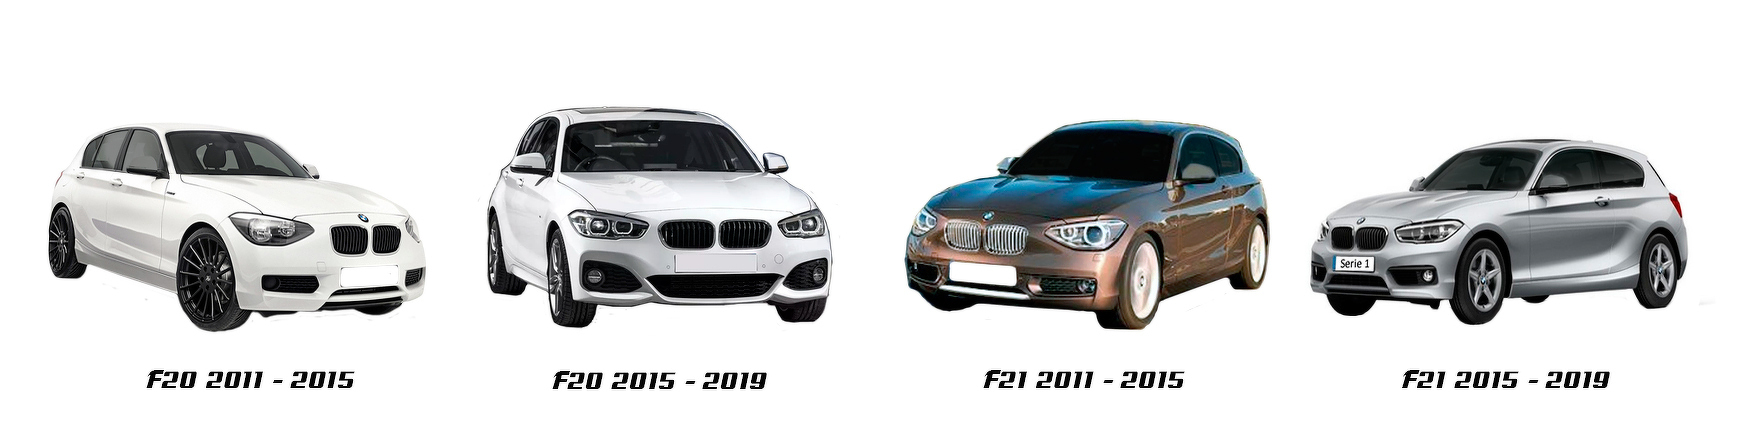 Piezas y Recambios De BMW Serie 1 (F20|F22) 06-2015 a 2019 | Veramauto.es